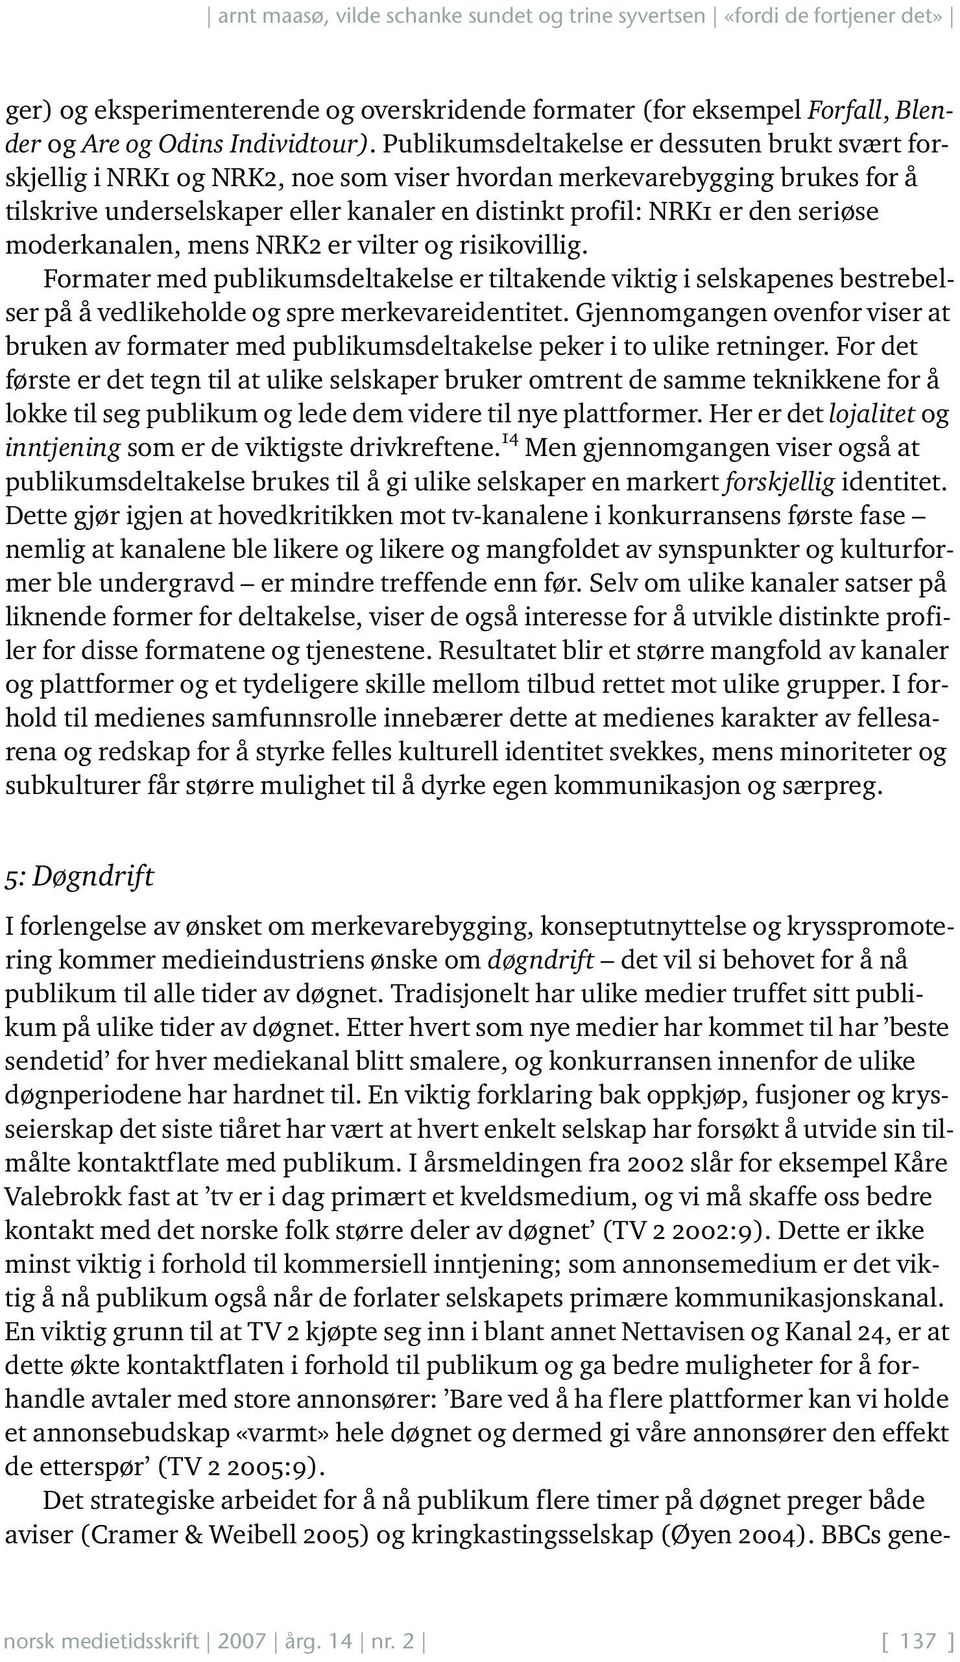 seriøse moderkanalen, mens NRK2 er vilter og risikovillig. Formater med publikumsdeltakelse er tiltakende viktig i selskapenes bestrebelser på å vedlikeholde og spre merkevareidentitet.